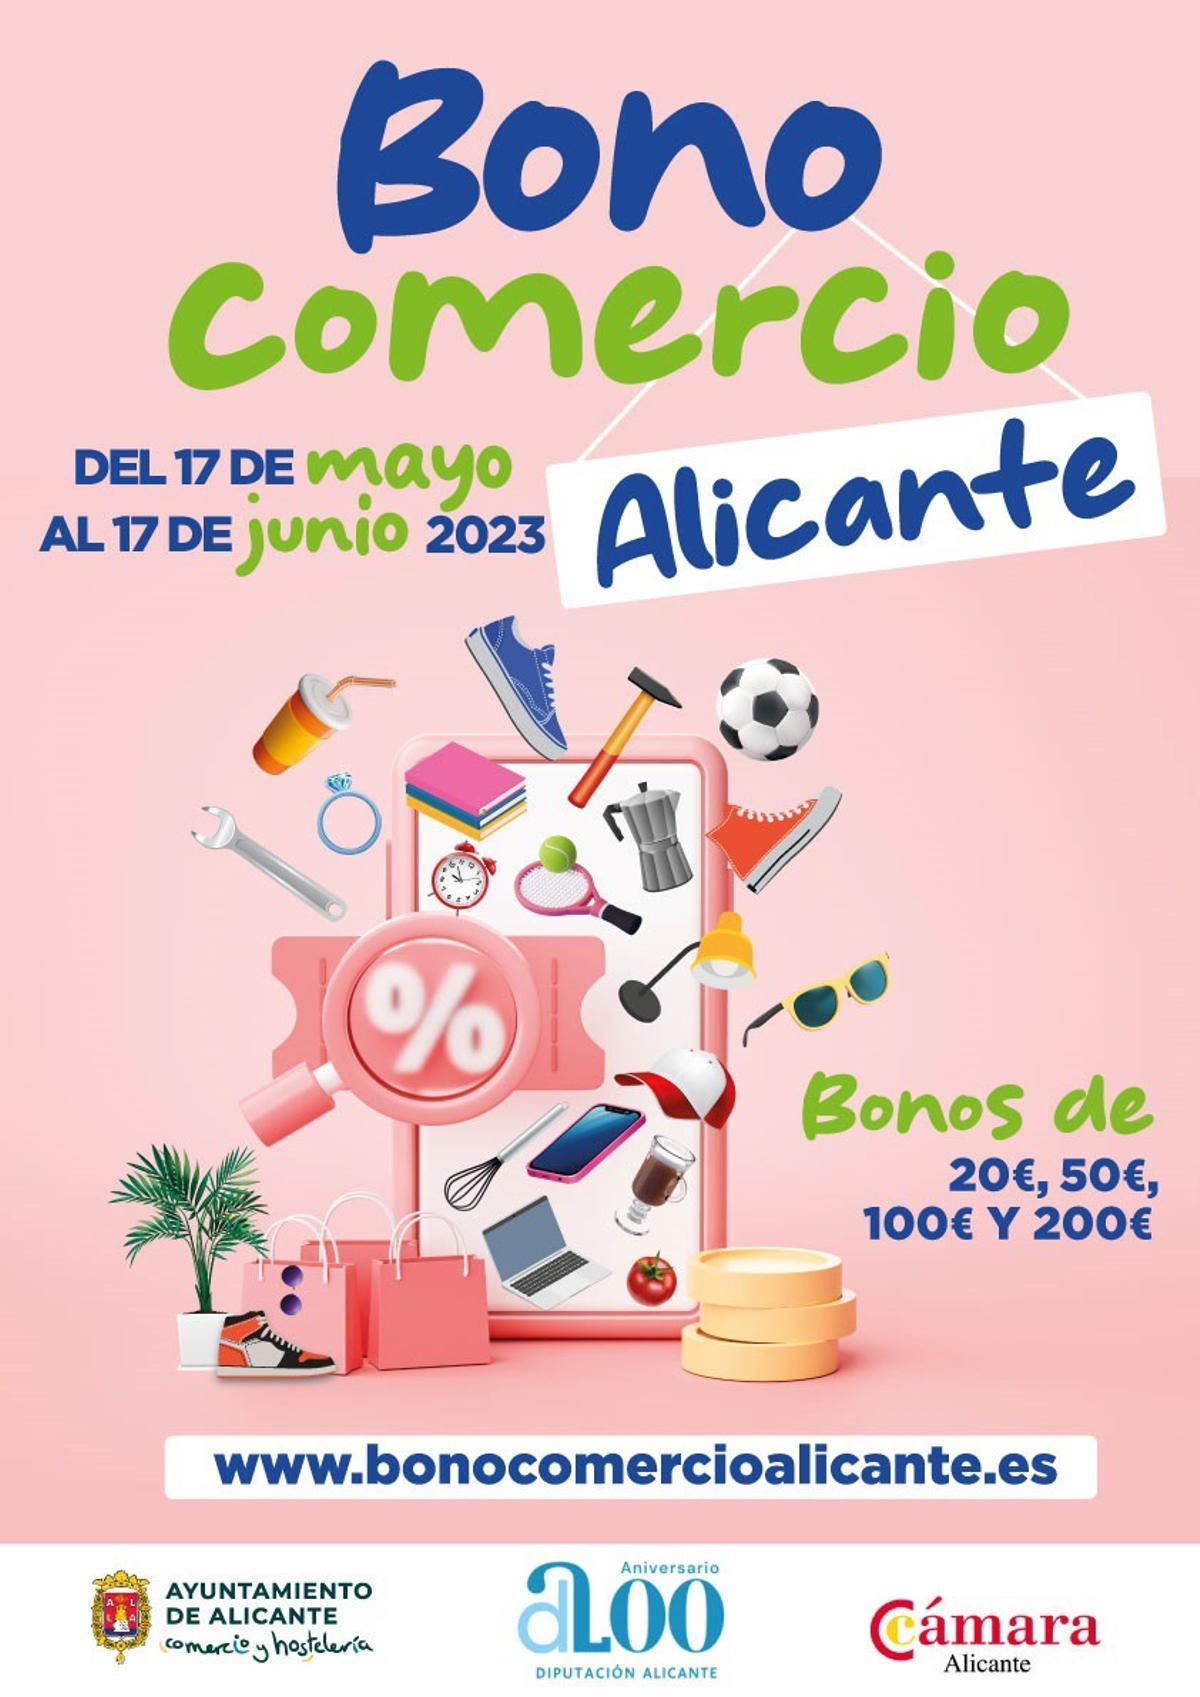 Bono Comercio Alicante 2023: ¿En qué establecimientos puedo gastarlo?